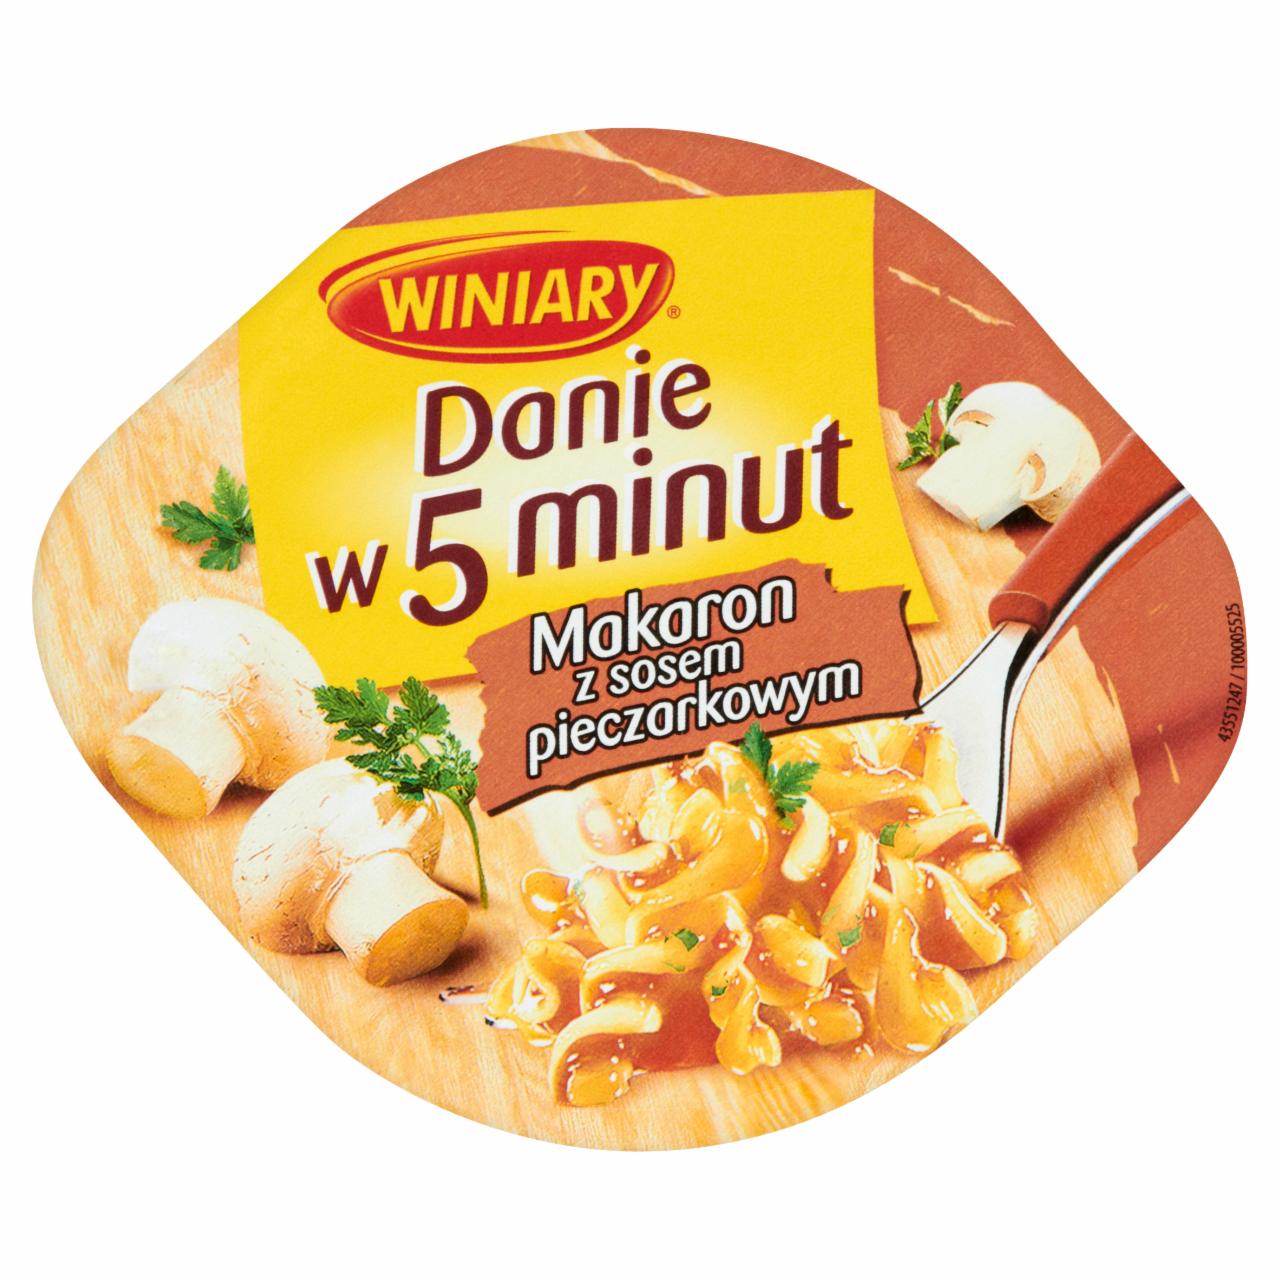 Zdjęcia - Winiary Danie w 5 minut Makaron z sosem pieczarkowym 50 g